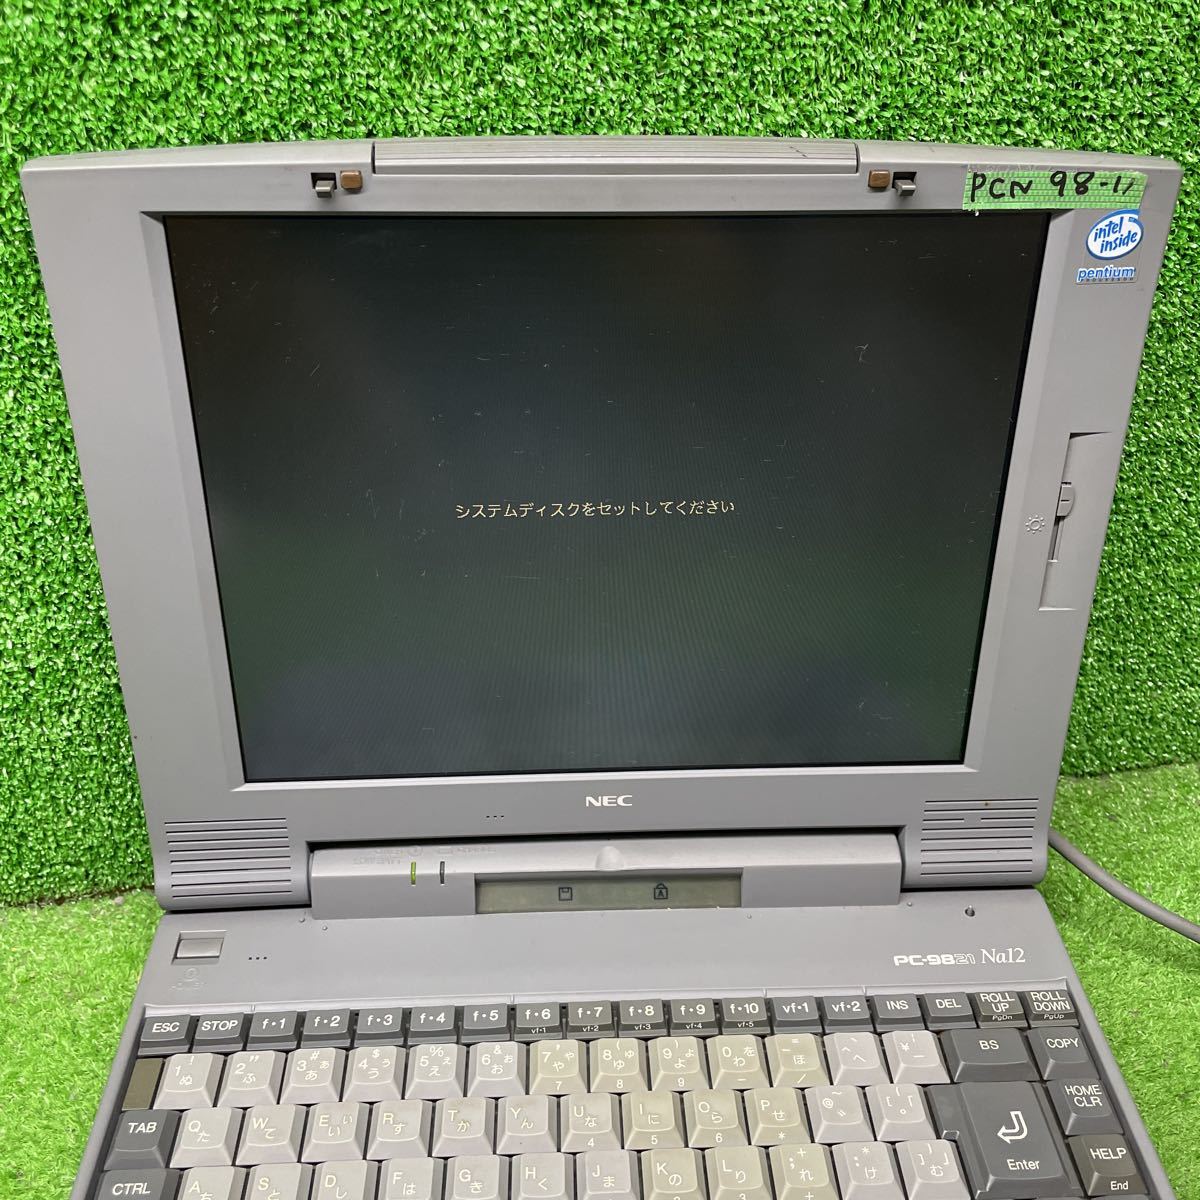 PCN98-11 激安 PC98 ノートブック NEC PC-9821Na12/S8 通電、起動OK ジャンク_画像2